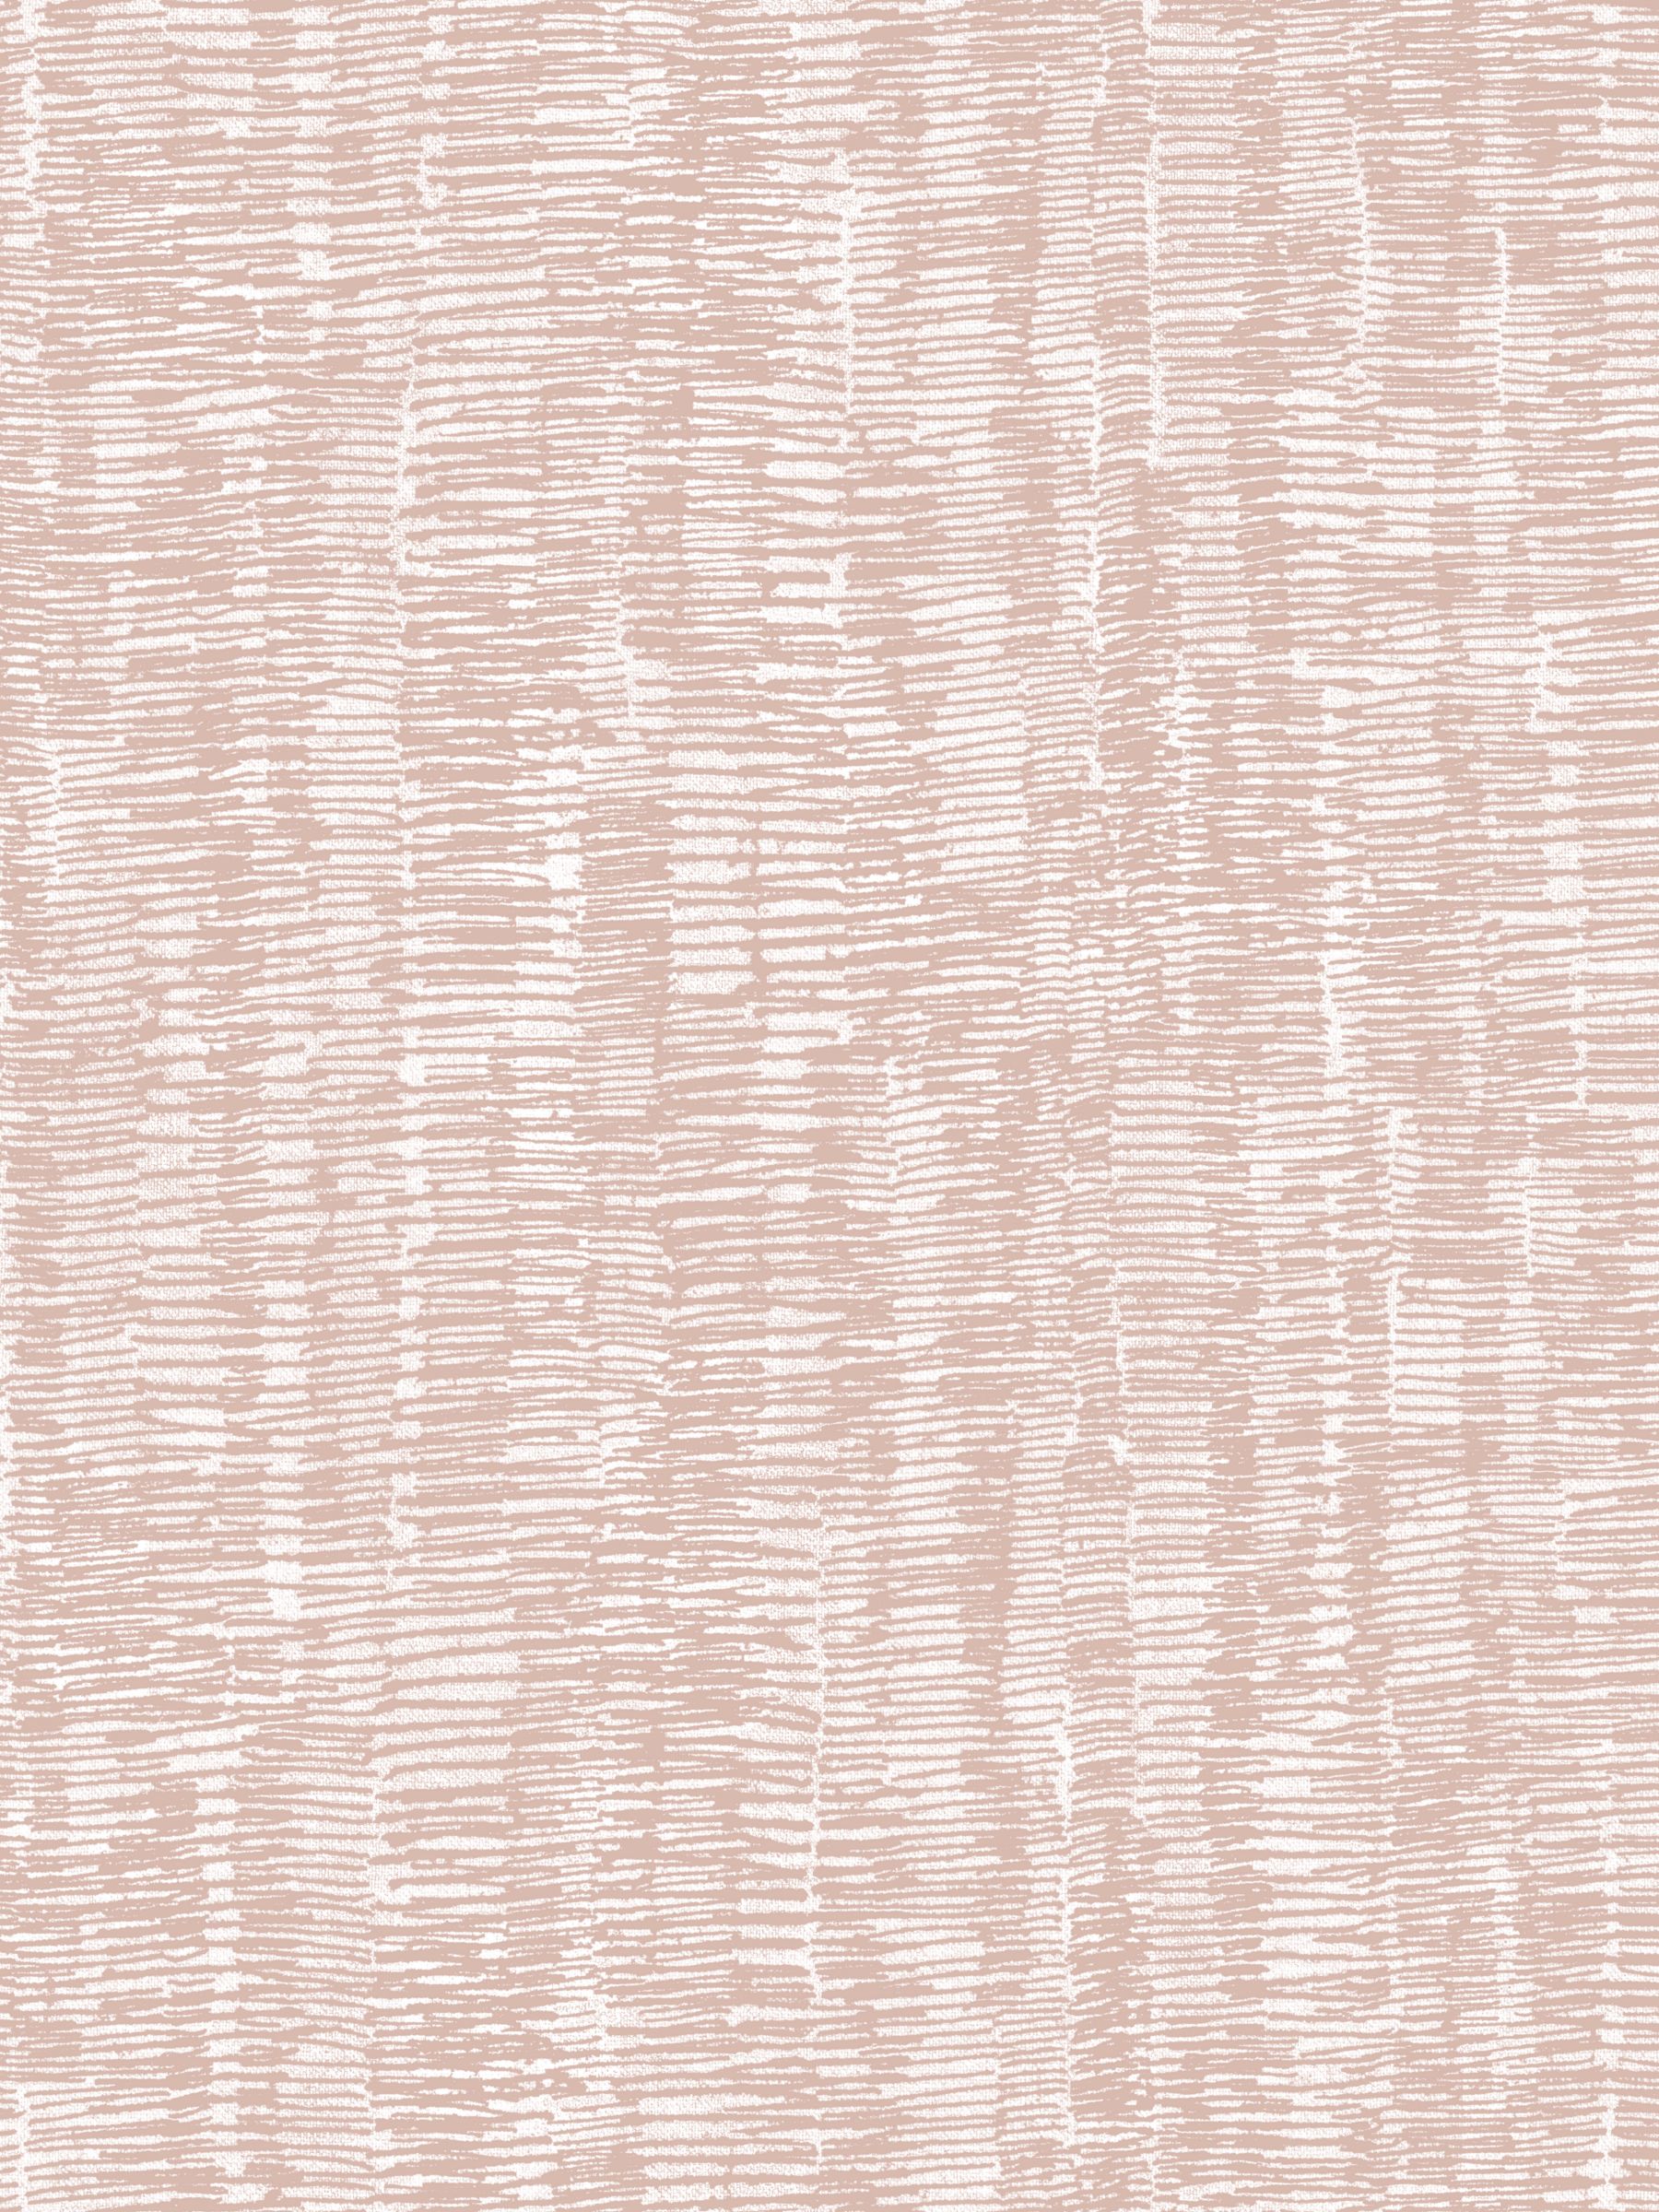 Terence Conran Hanko Stitch Texture Wallpaper, TC25247